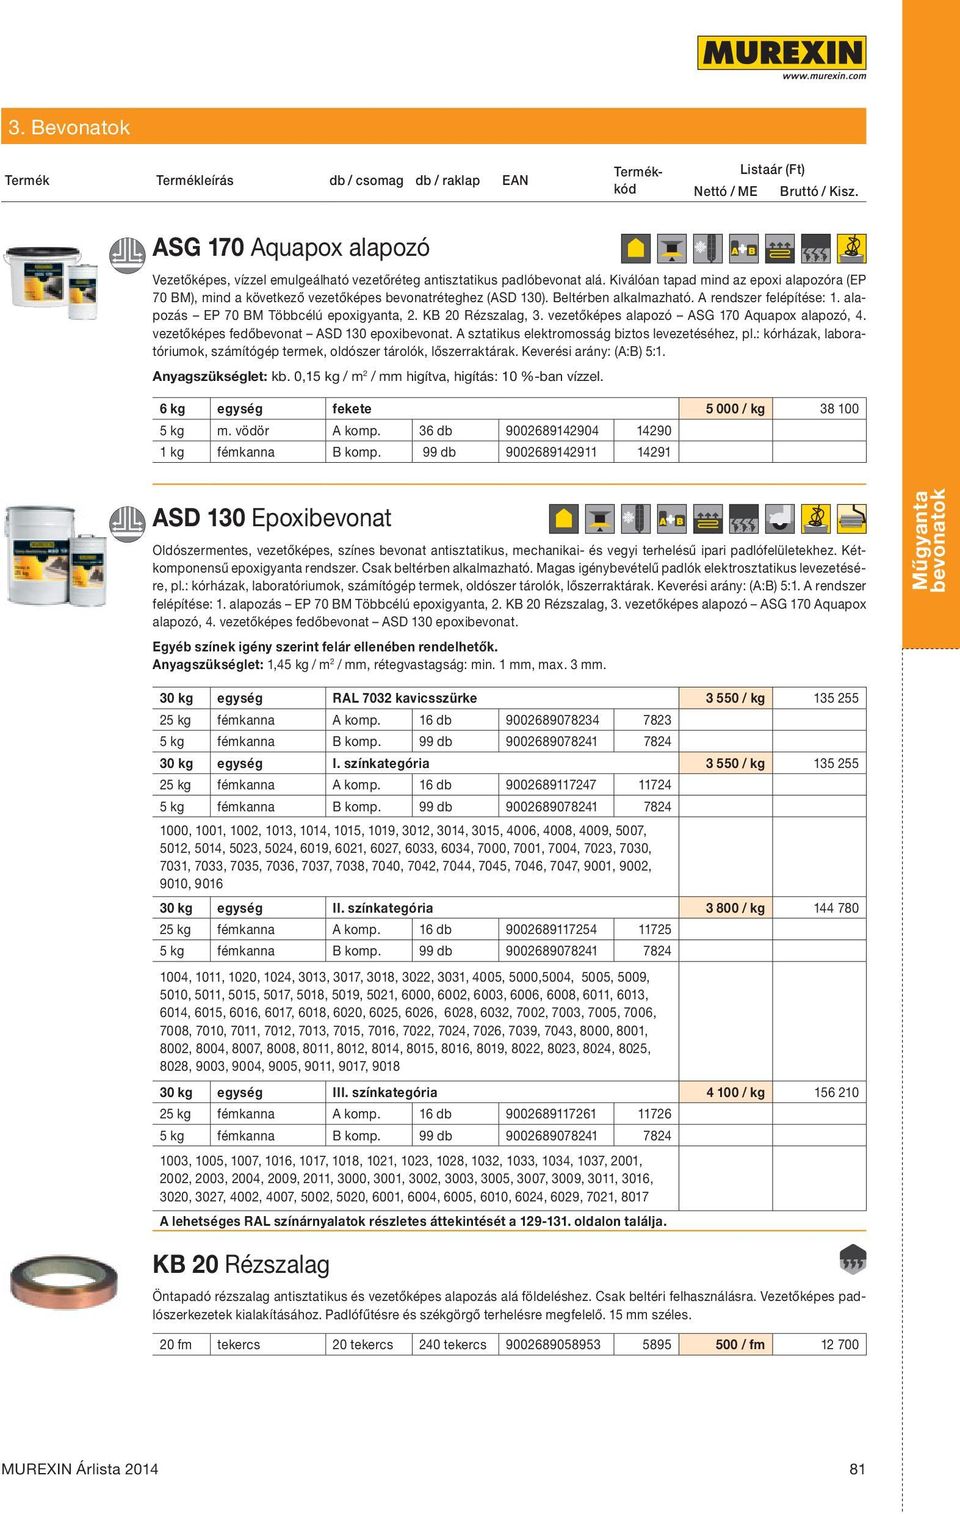 KB 20 Rézszalag, 3. vezetőképes alapozó ASG 170 Aquapox alapozó, 4. vezetőképes fedőbevonat ASD 130 epoxibevonat. A sztatikus elektromosság biztos levezetéséhez, pl.